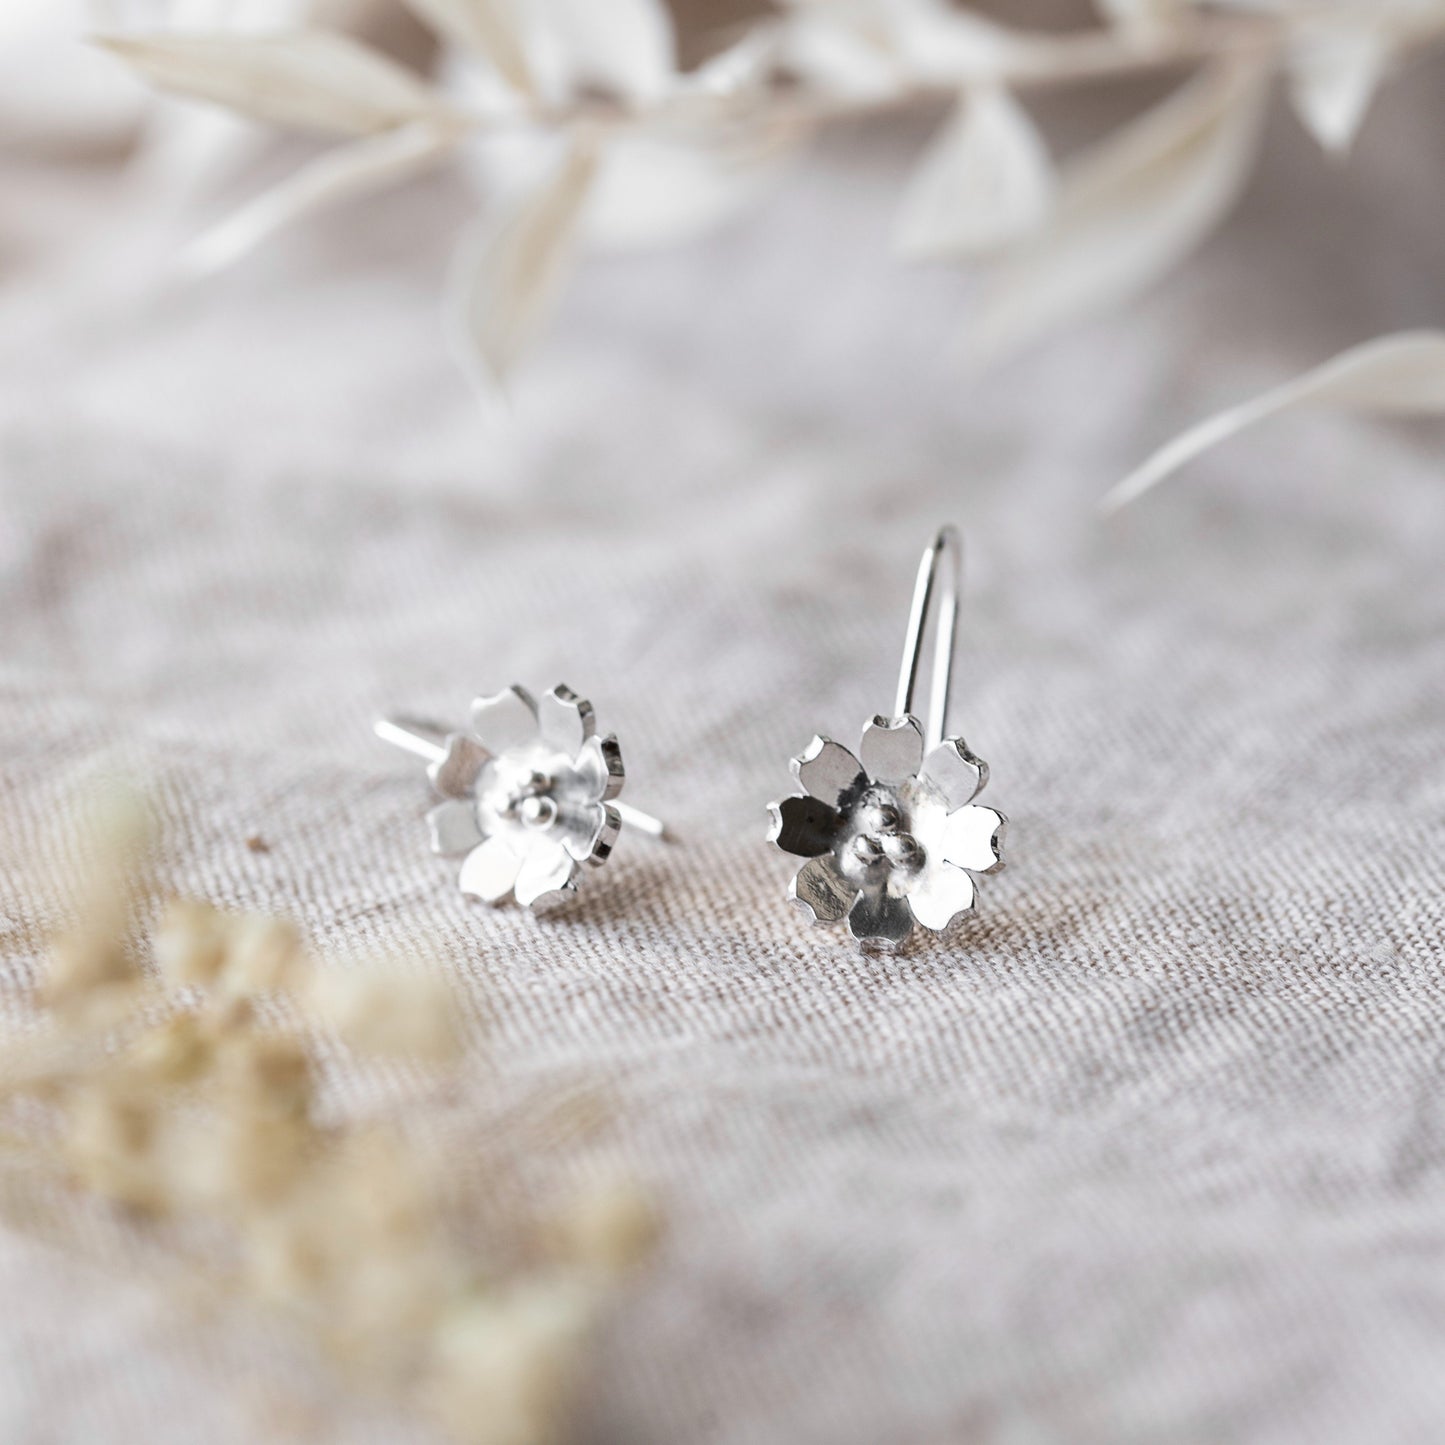 Dangly Silver Flower Hook Earrings, Handmade by Anna Calvert Jewellery in the UK